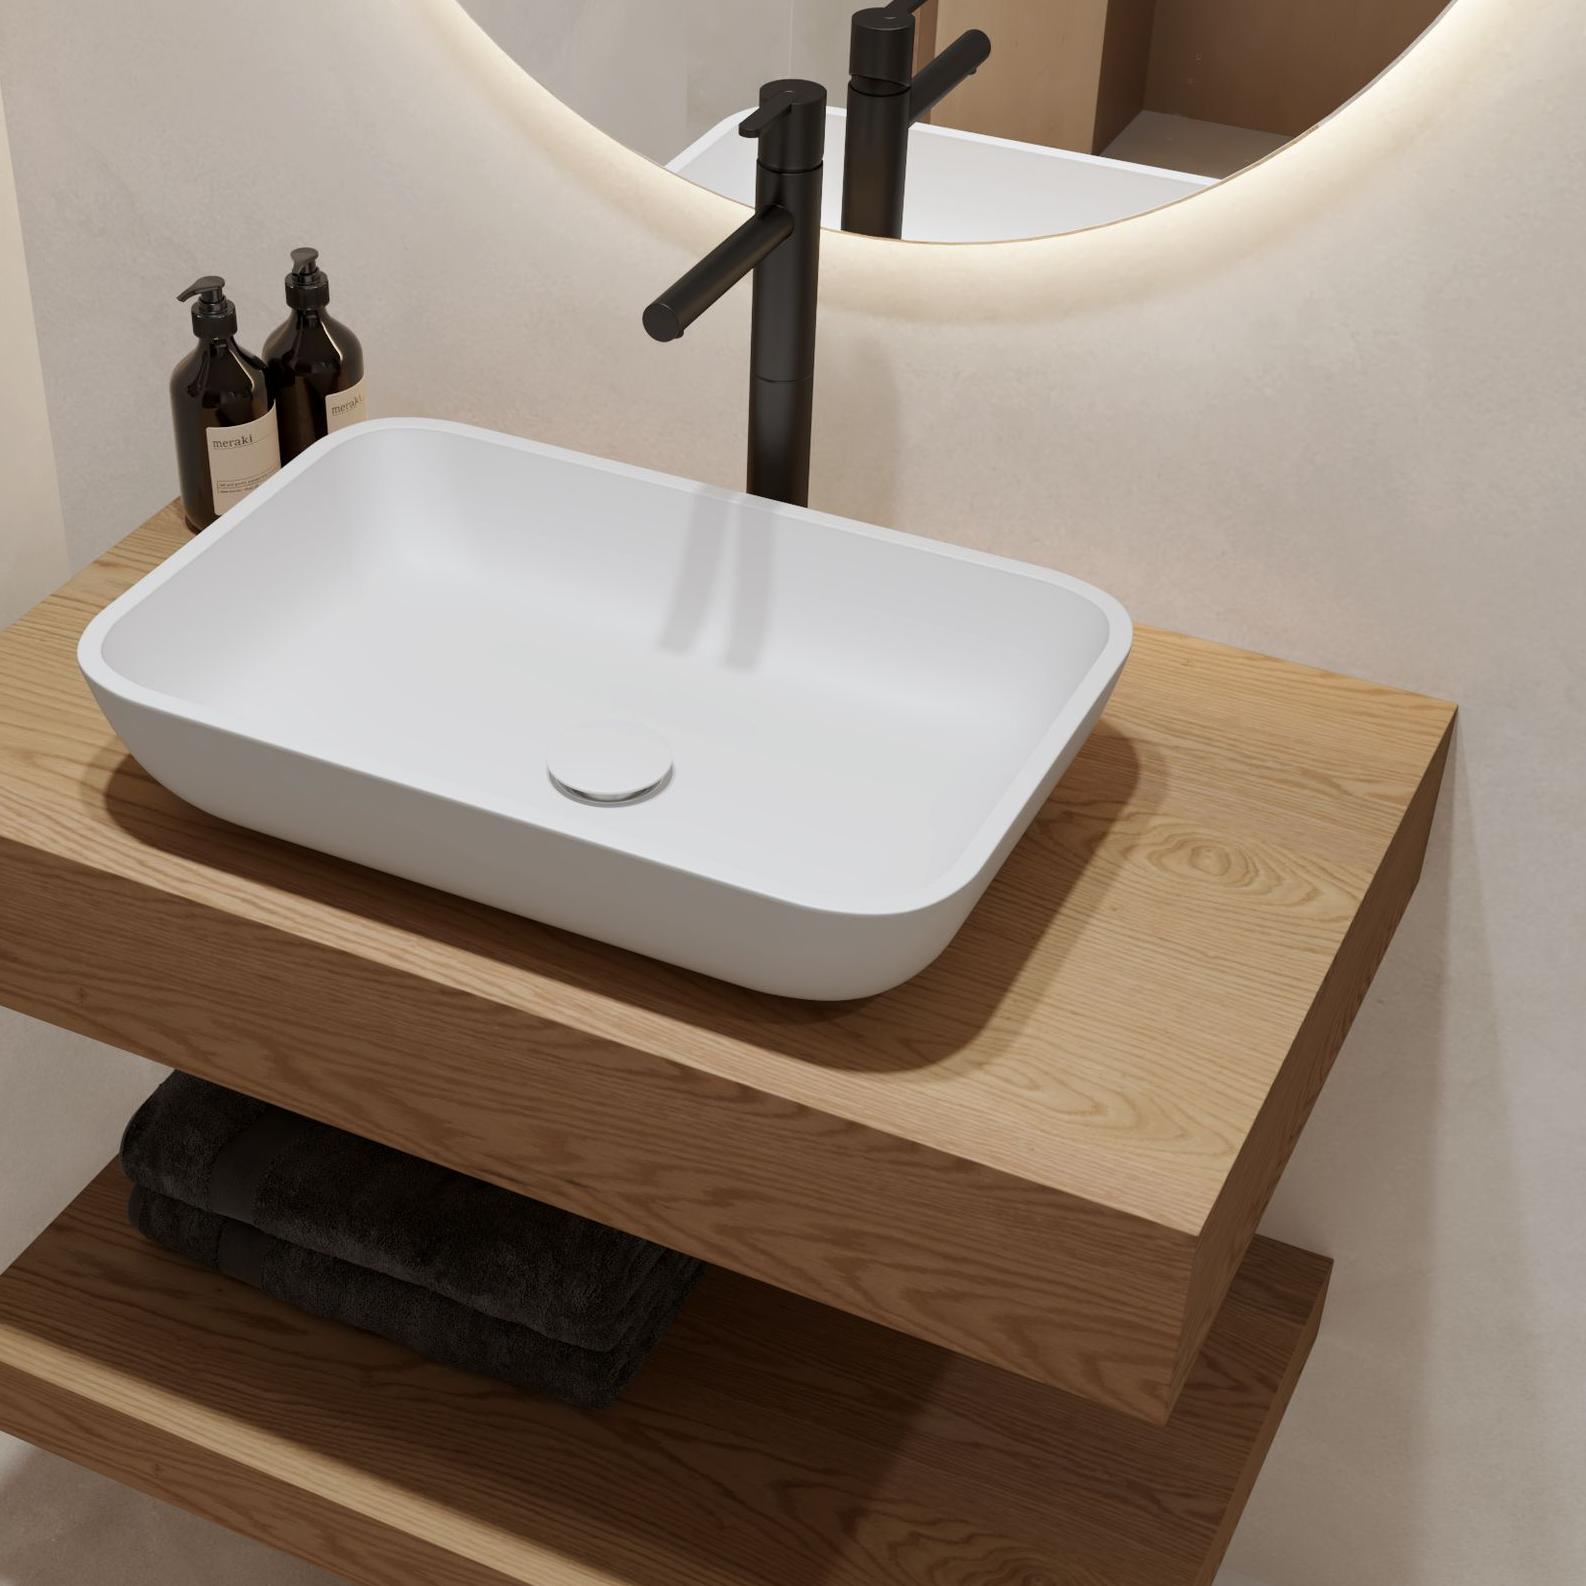 Hermes wooden basin shelf